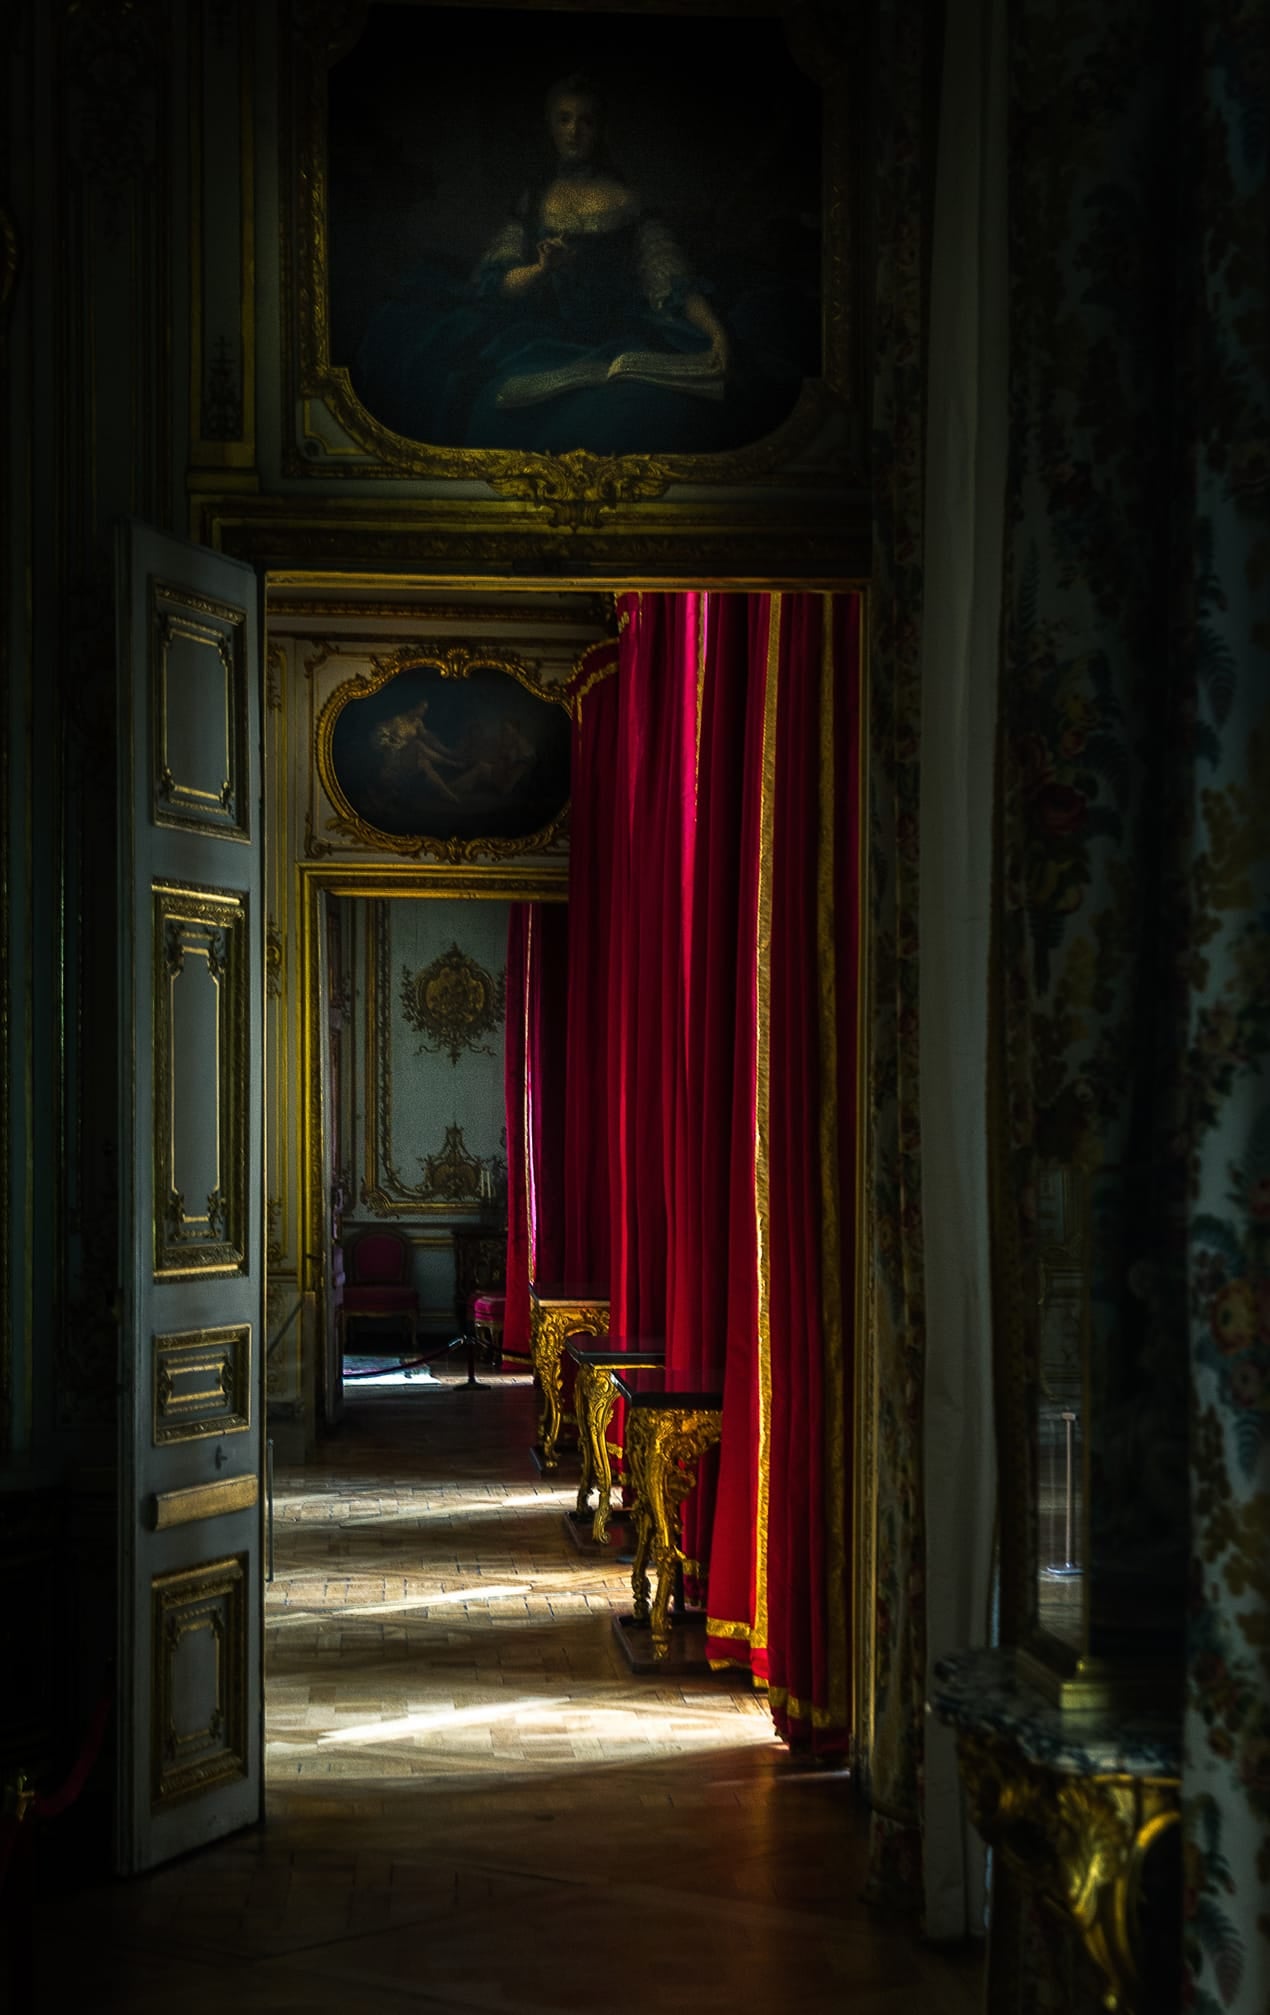 palácio de Versailles